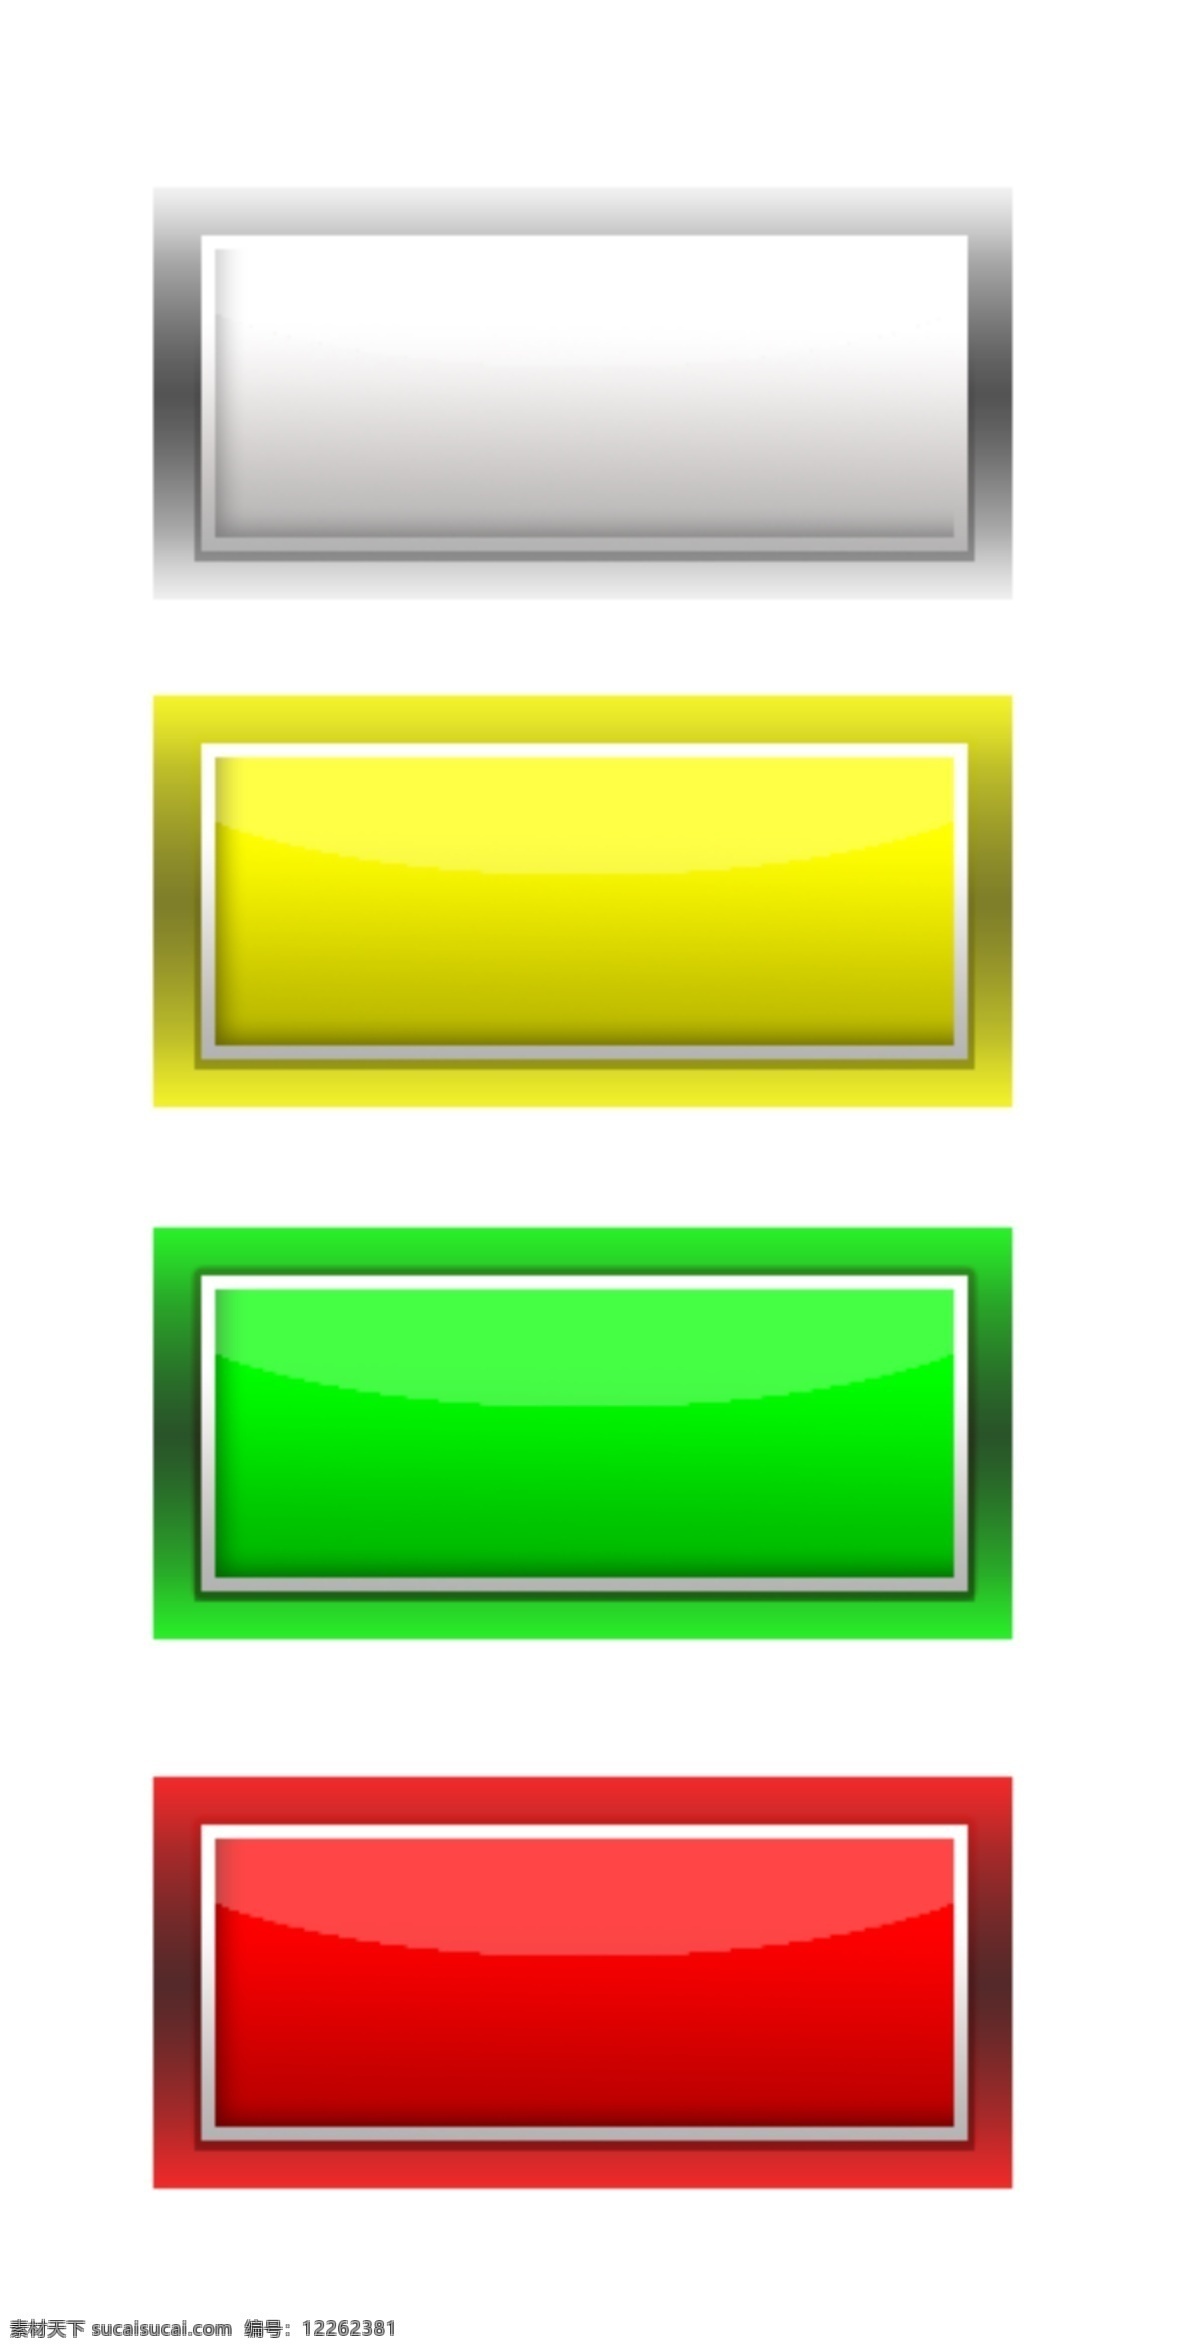 其他模板 水晶按钮 网页模板 源文件 网页 彩色 按键 模板下载 网页彩色按键 网页按键 彩色立体方块 网页素材